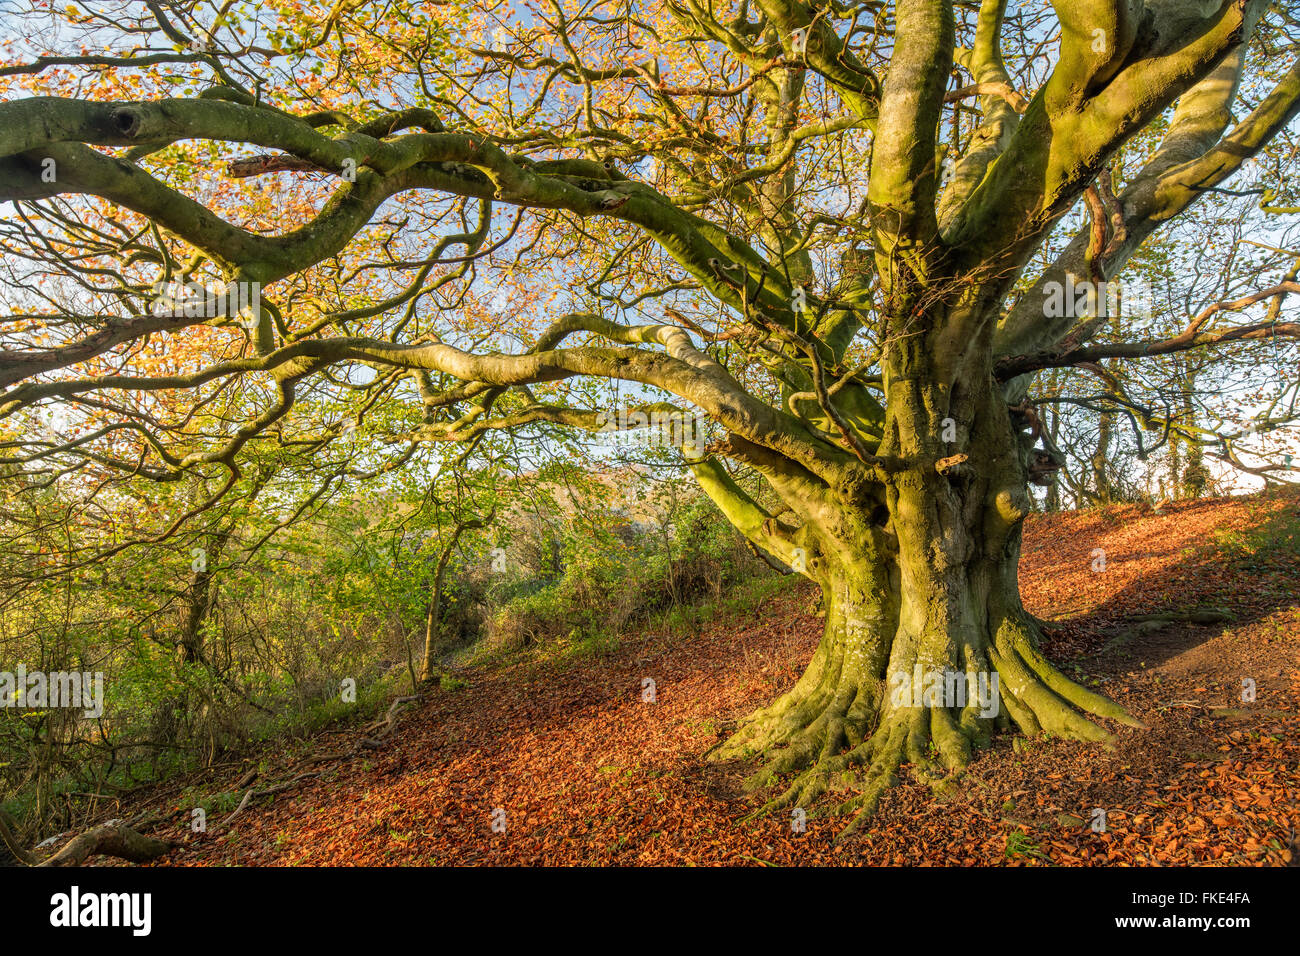 Le hêtre dans les bois en automne nr Milborne Wick, Somerset, England, UK Banque D'Images